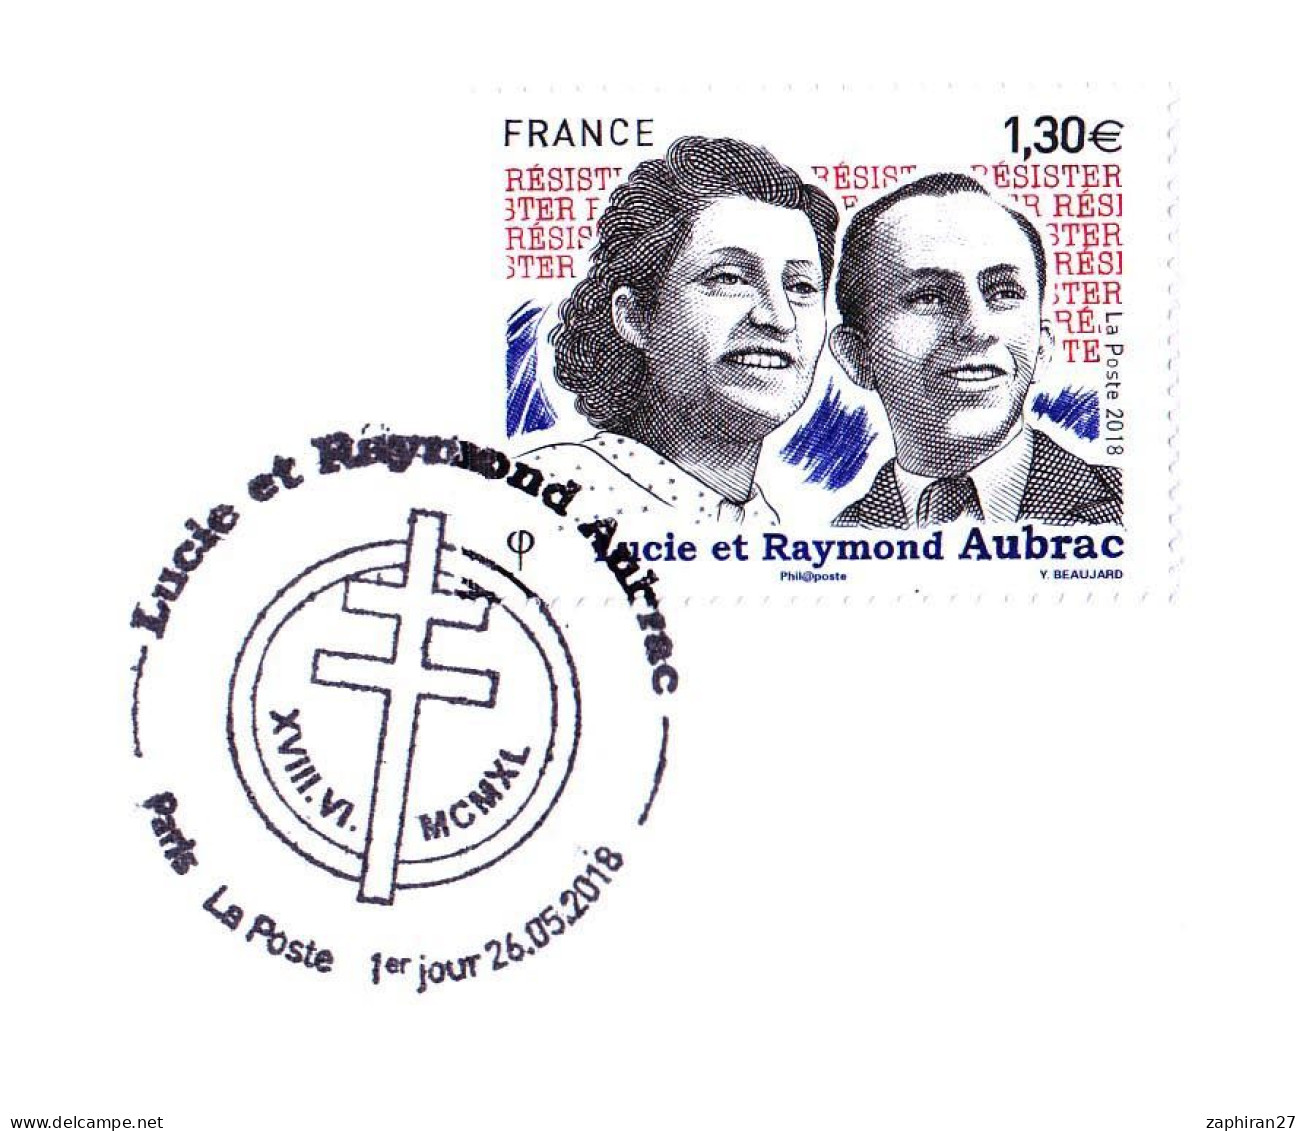 SECONDE GUERRE : LUCIE & RAYMOND AUBRAC RESISTANTS (26-5-2018)  #623# - Guerre Mondiale (Seconde)